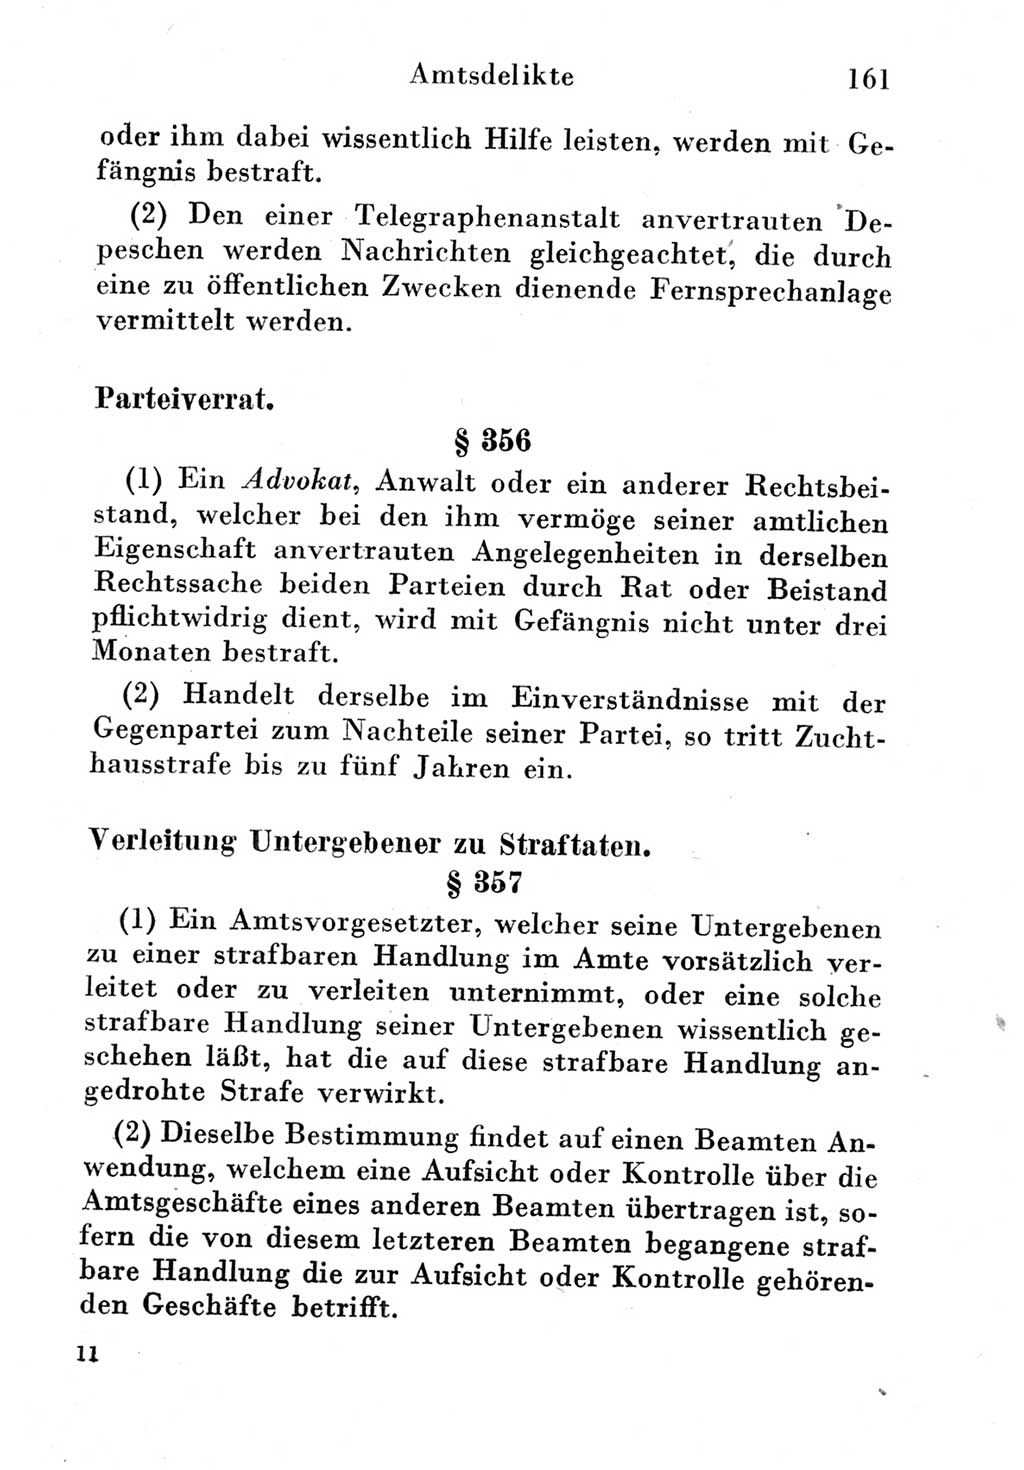 Strafgesetzbuch (StGB) und andere Strafgesetze [Deutsche Demokratische Republik (DDR)] 1951, Seite 161 (StGB Strafges. DDR 1951, S. 161)